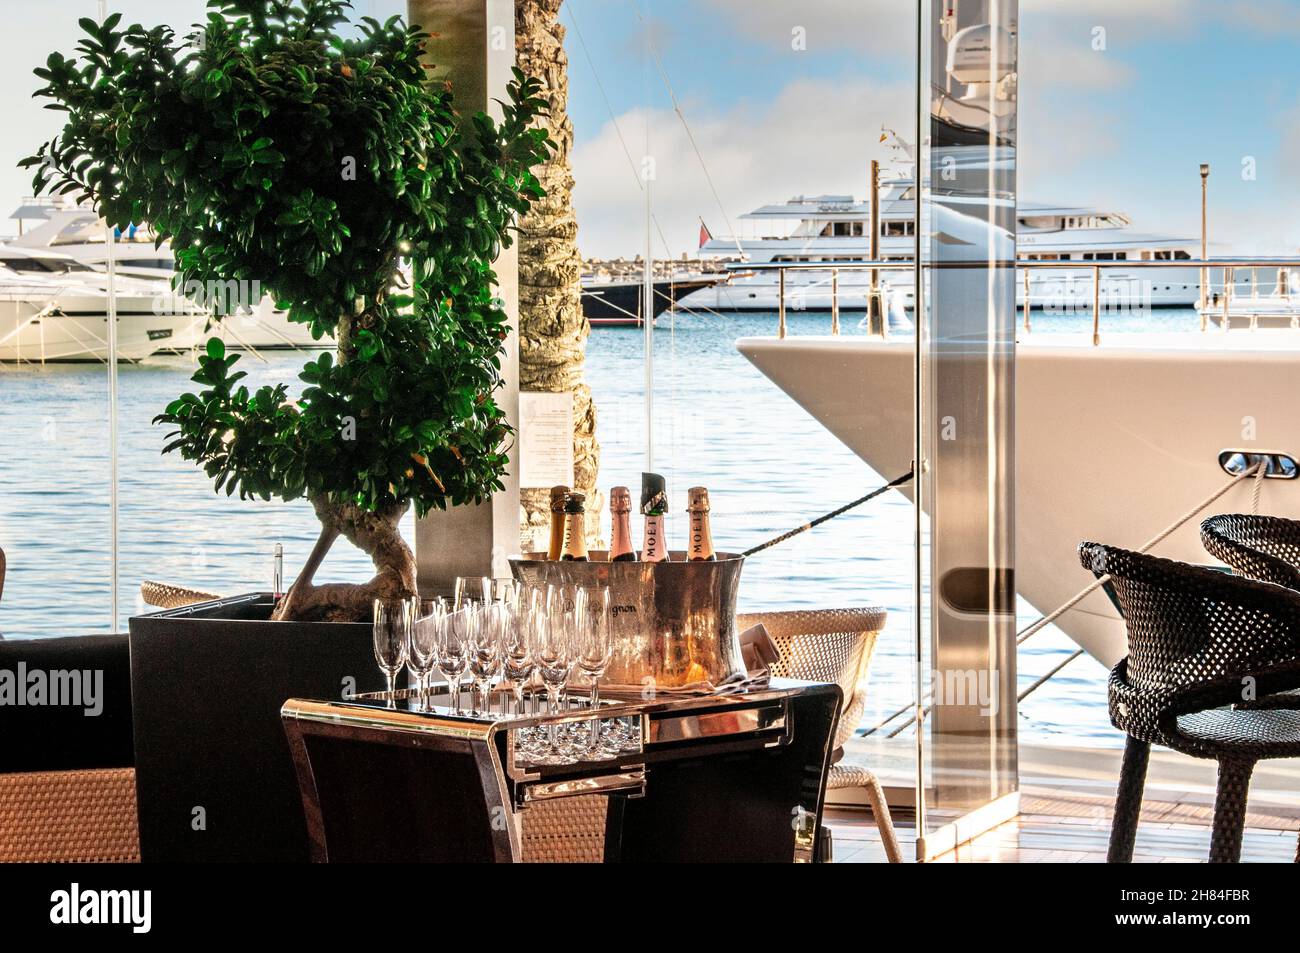 Luxe Champagne bar dans la marina Resort Puerto Portals avec de super yachts amarrés en arrière-plan, avec des bouteilles de champagne et des verres prêts pour le service à la clientèle riche portails nous Mallorca Espagne Banque D'Images